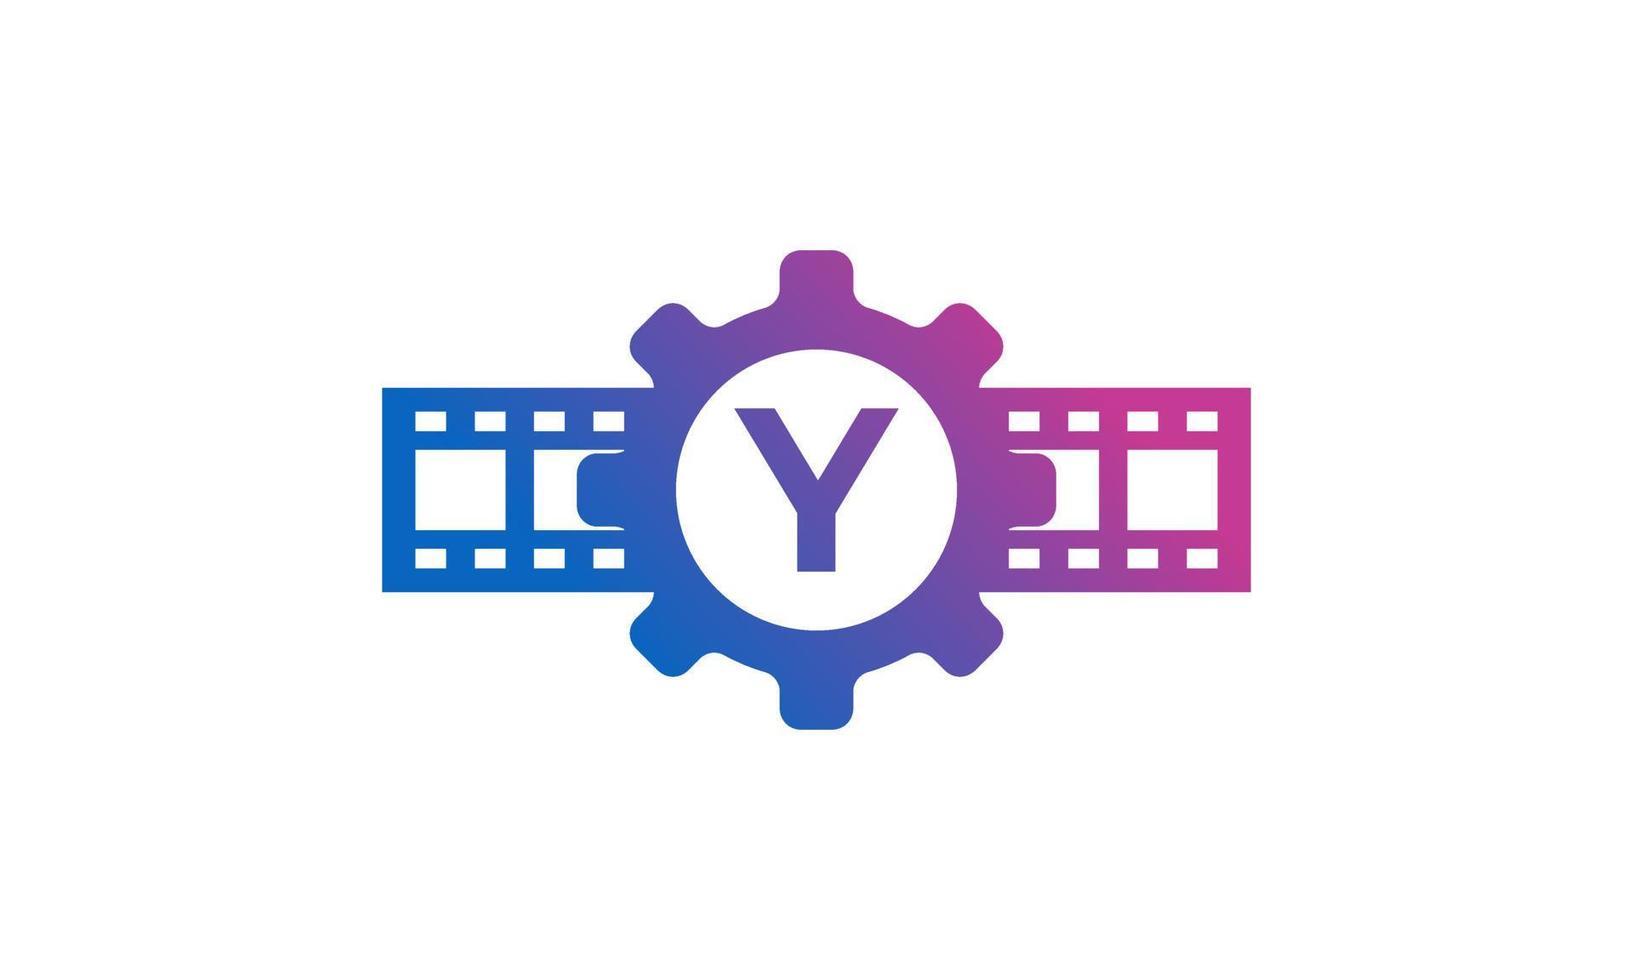 letra inicial y engranaje rueda dentada con rayas de carrete tira de película para película cine producción estudio logotipo inspiración vector